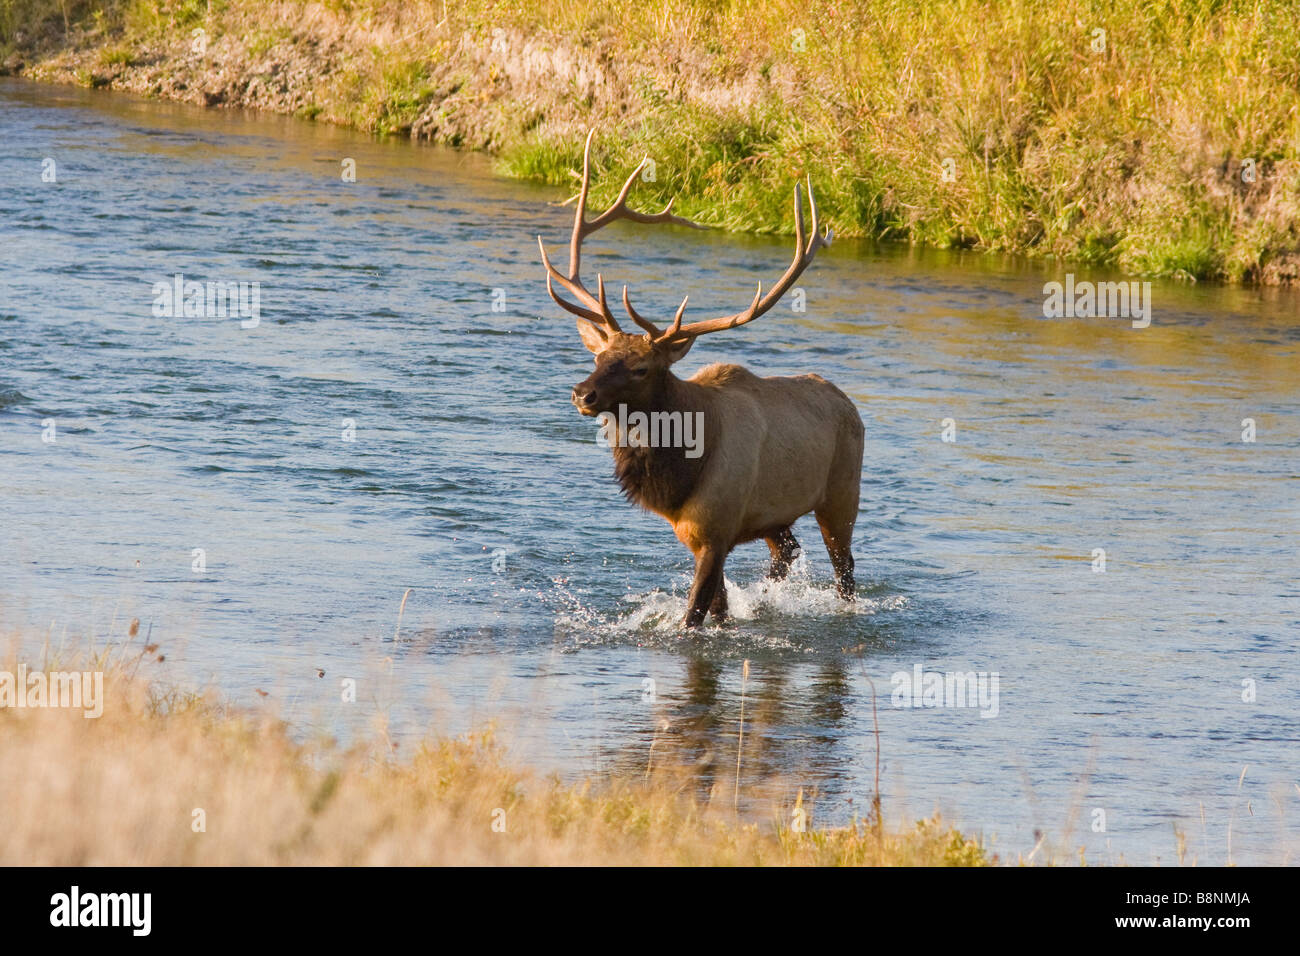 big bull elk crossing river Stock Photo